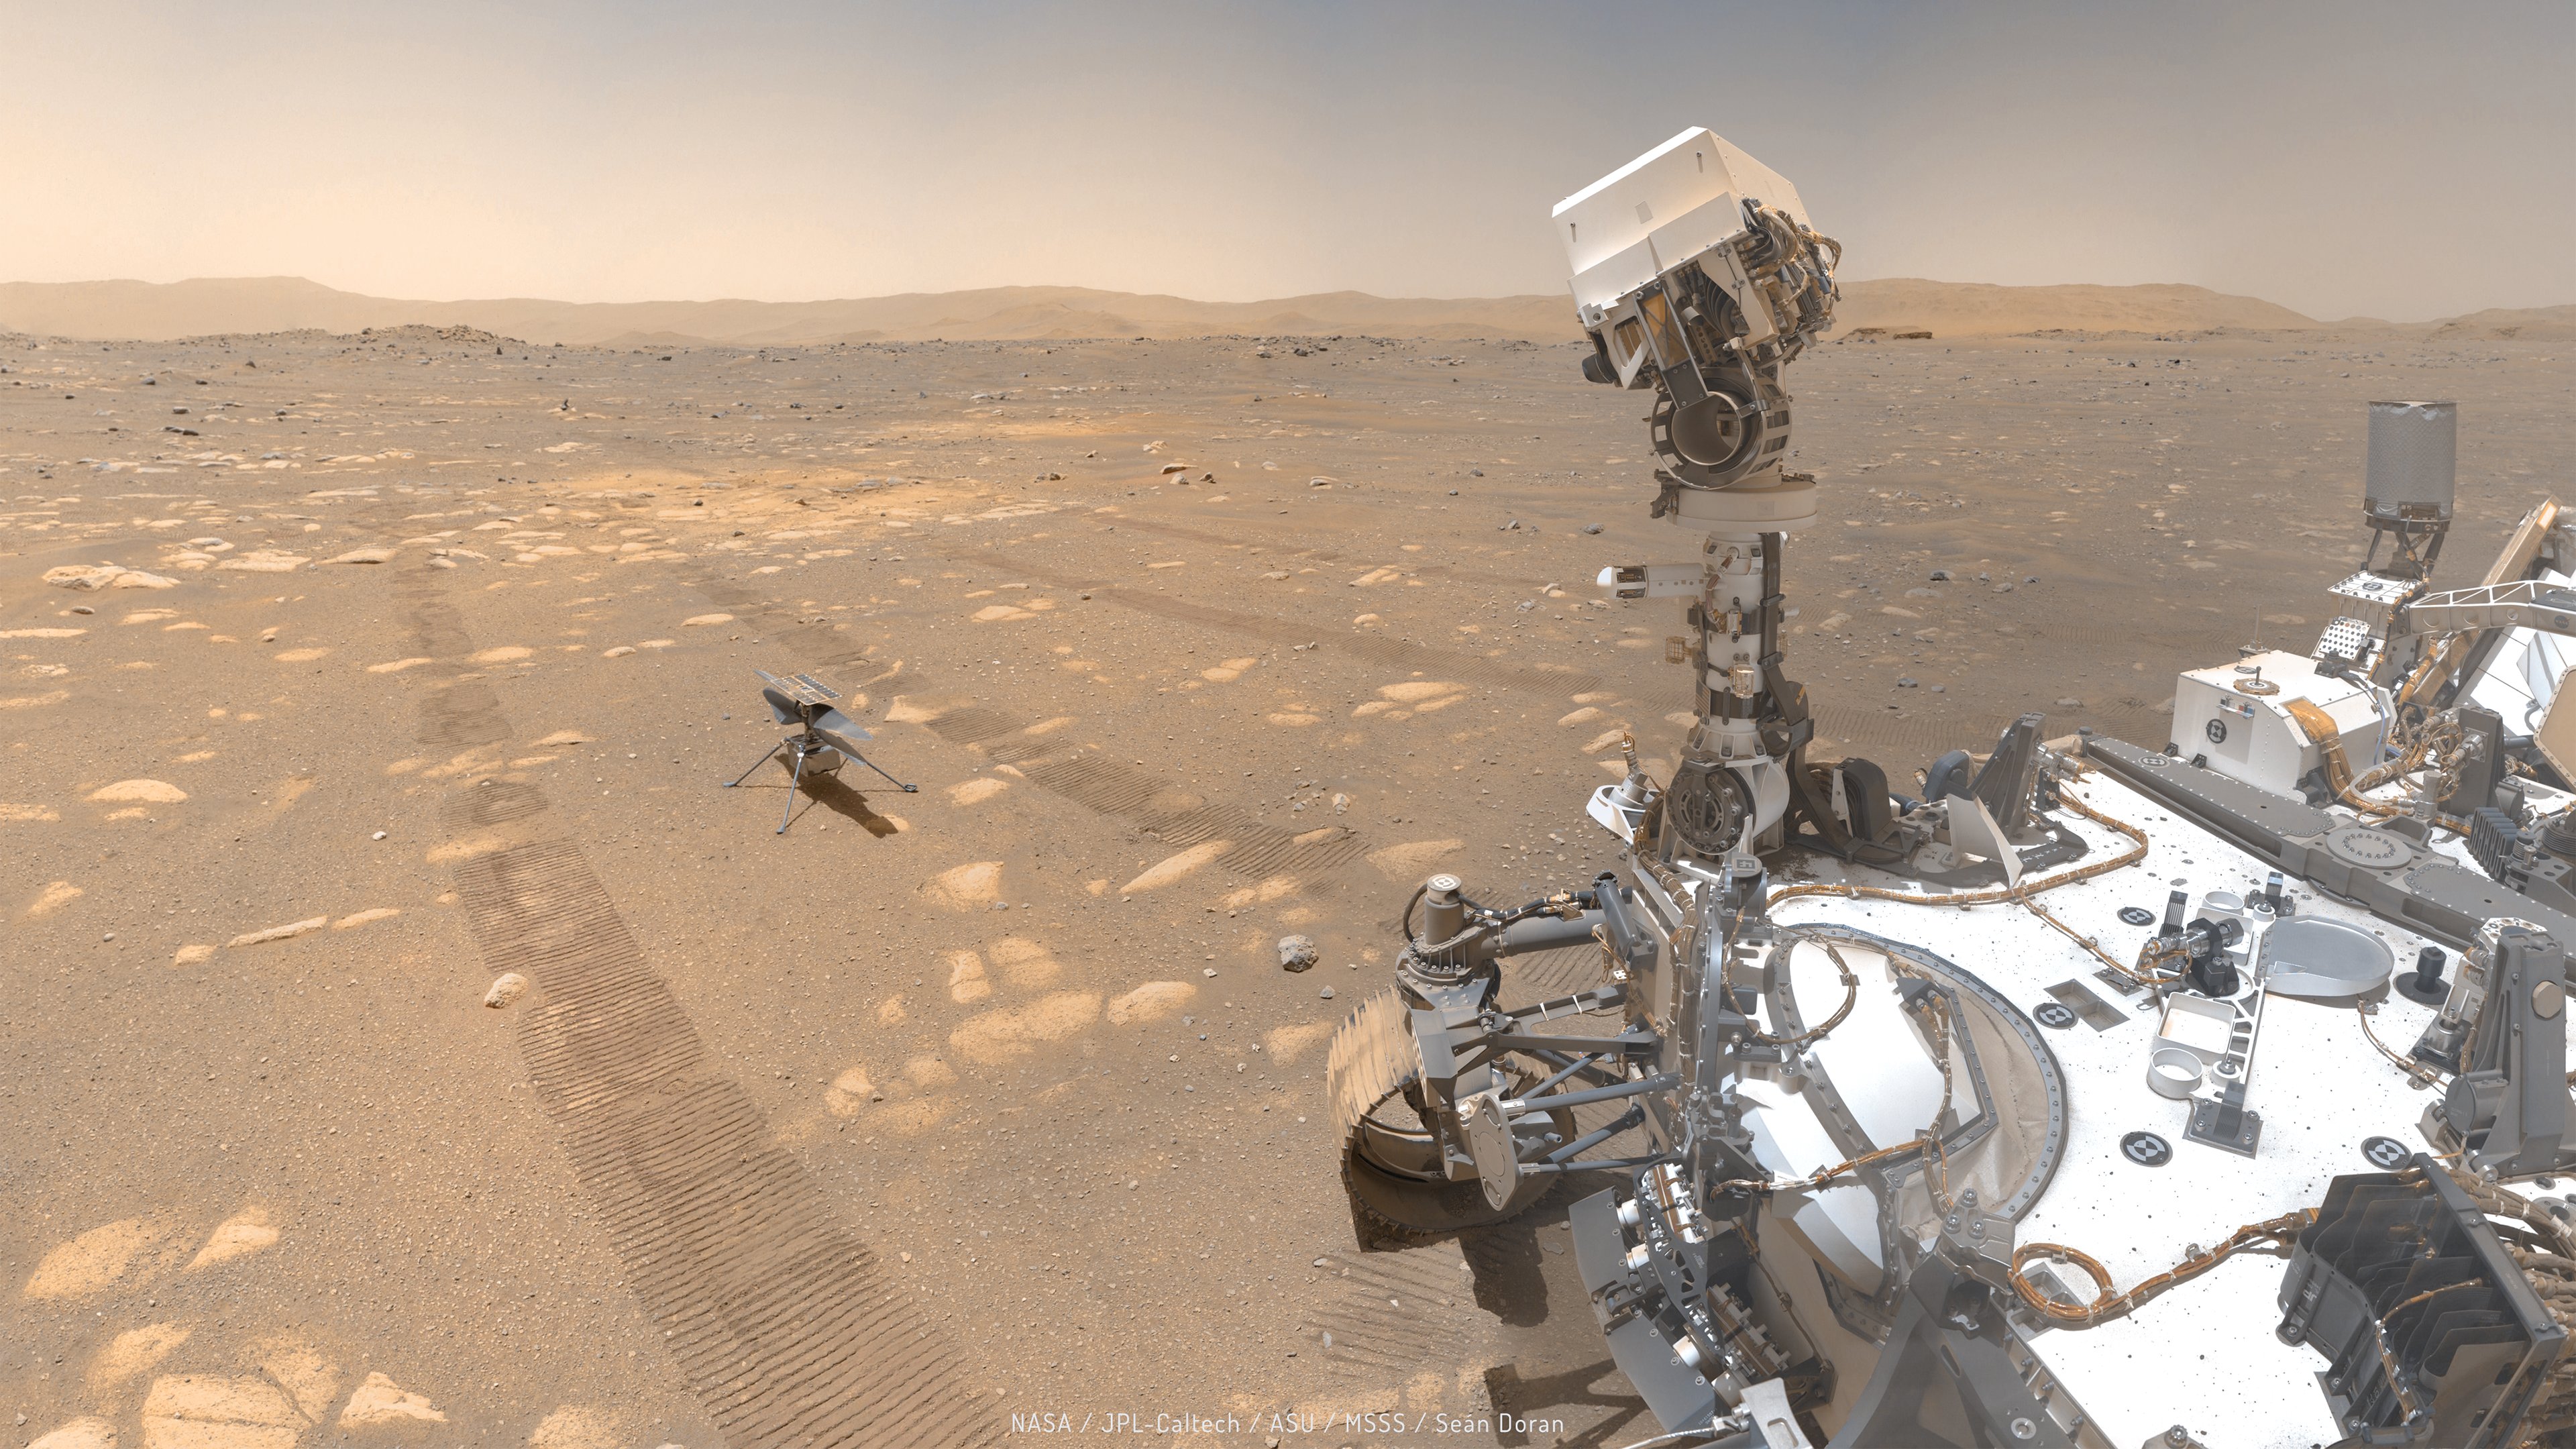 El científico ciudadano Seán Doran creó este mosaico del helicóptero Perseverance and Ingenuity del rover de Marte de la NASA utilizando 62 imágenes tomadas por Perseverance el 6 de abril de 2021.